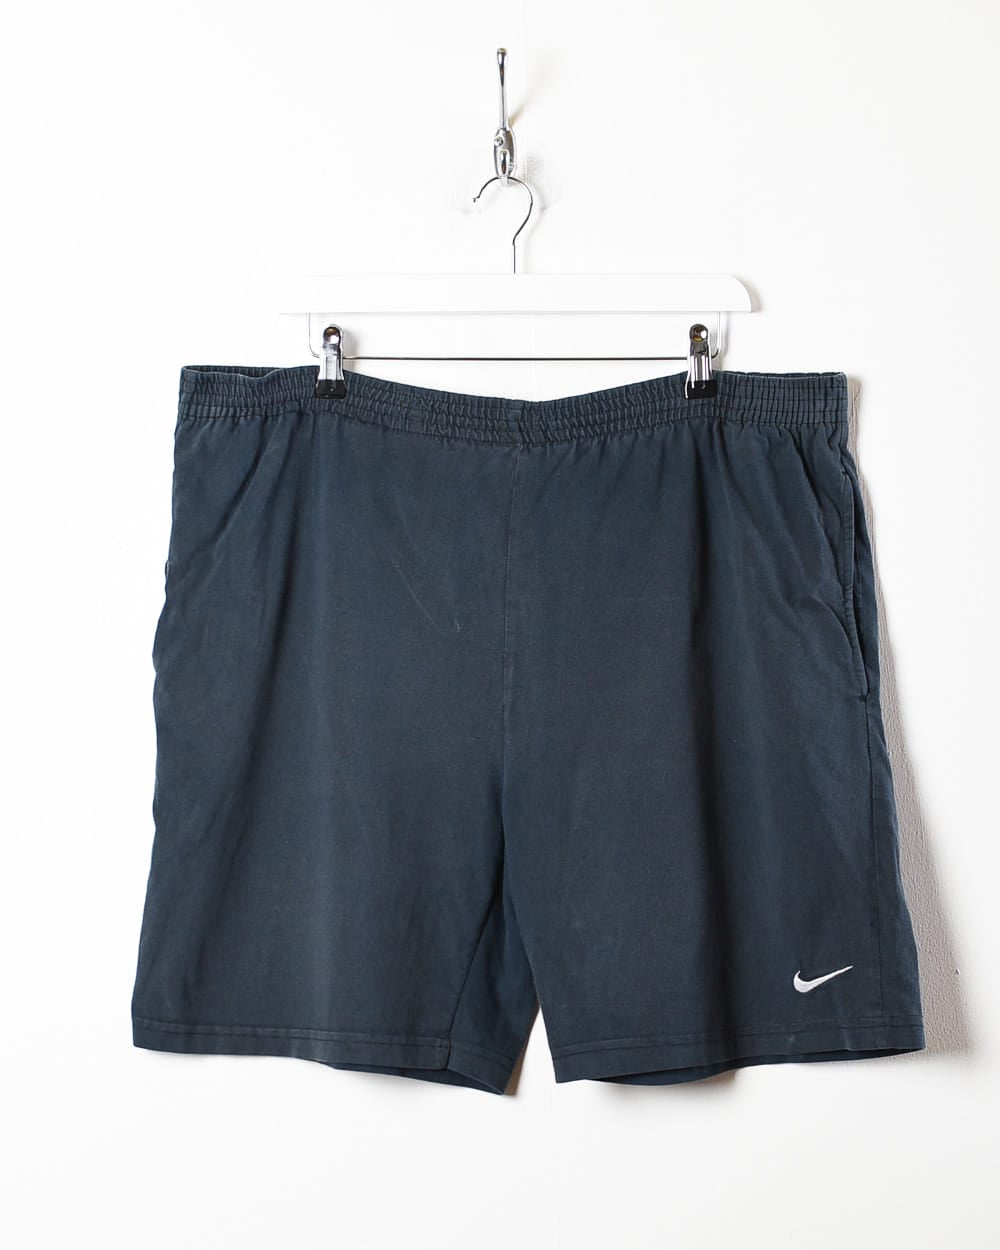 Black Nike Shorts - X-Large